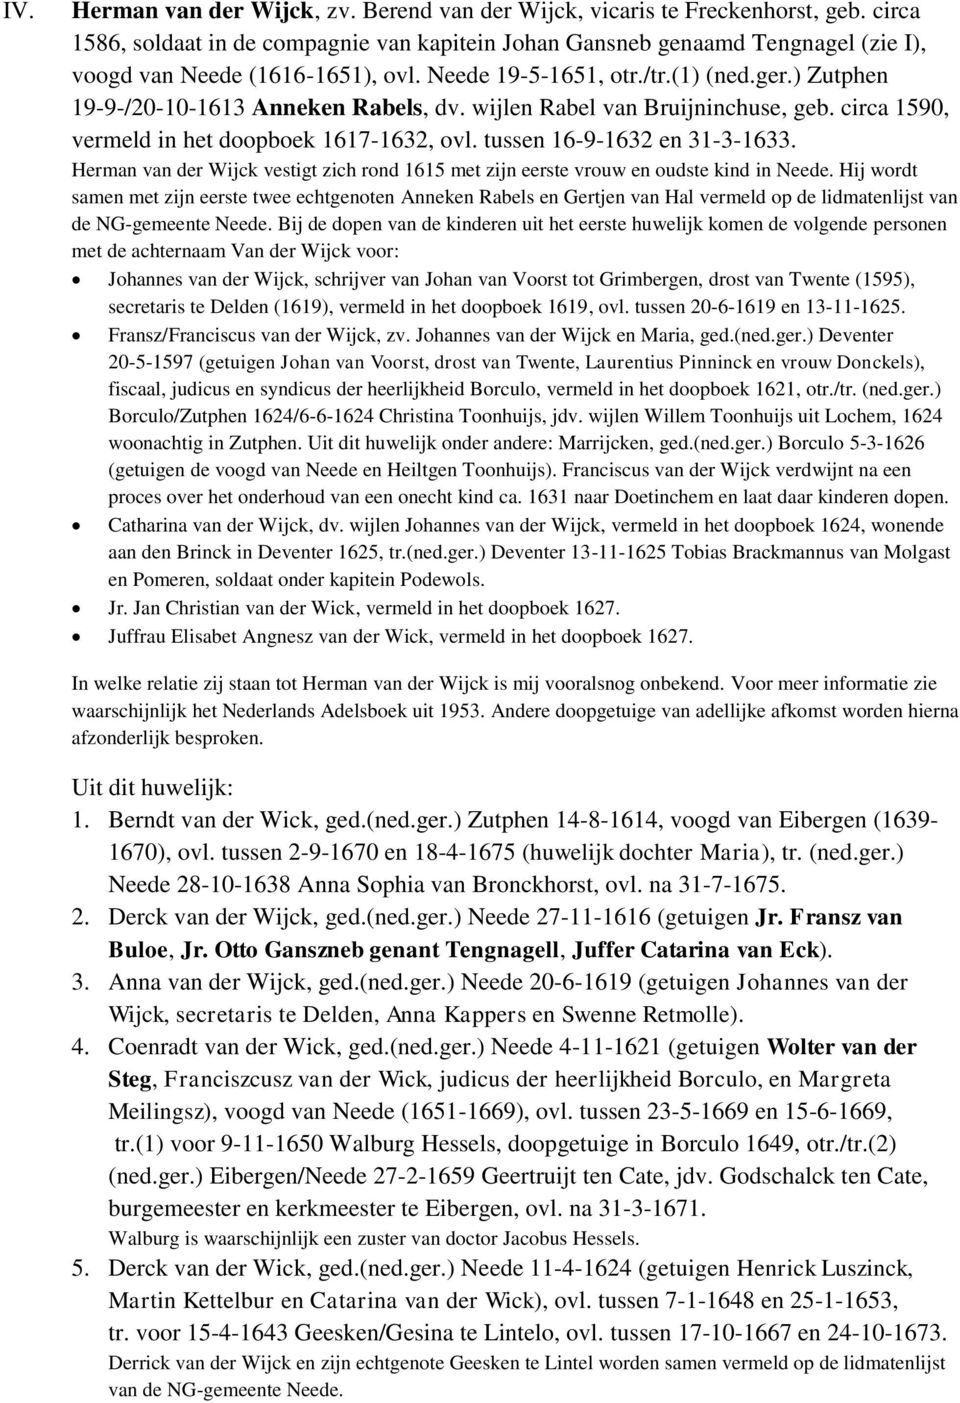 ) Zutphen 19-9-/20-10-1613 Anneken Rabels, dv. wijlen Rabel van Bruijninchuse, geb. circa 1590, vermeld in het doopboek 1617-1632, ovl. tussen 16-9-1632 en 31-3-1633.